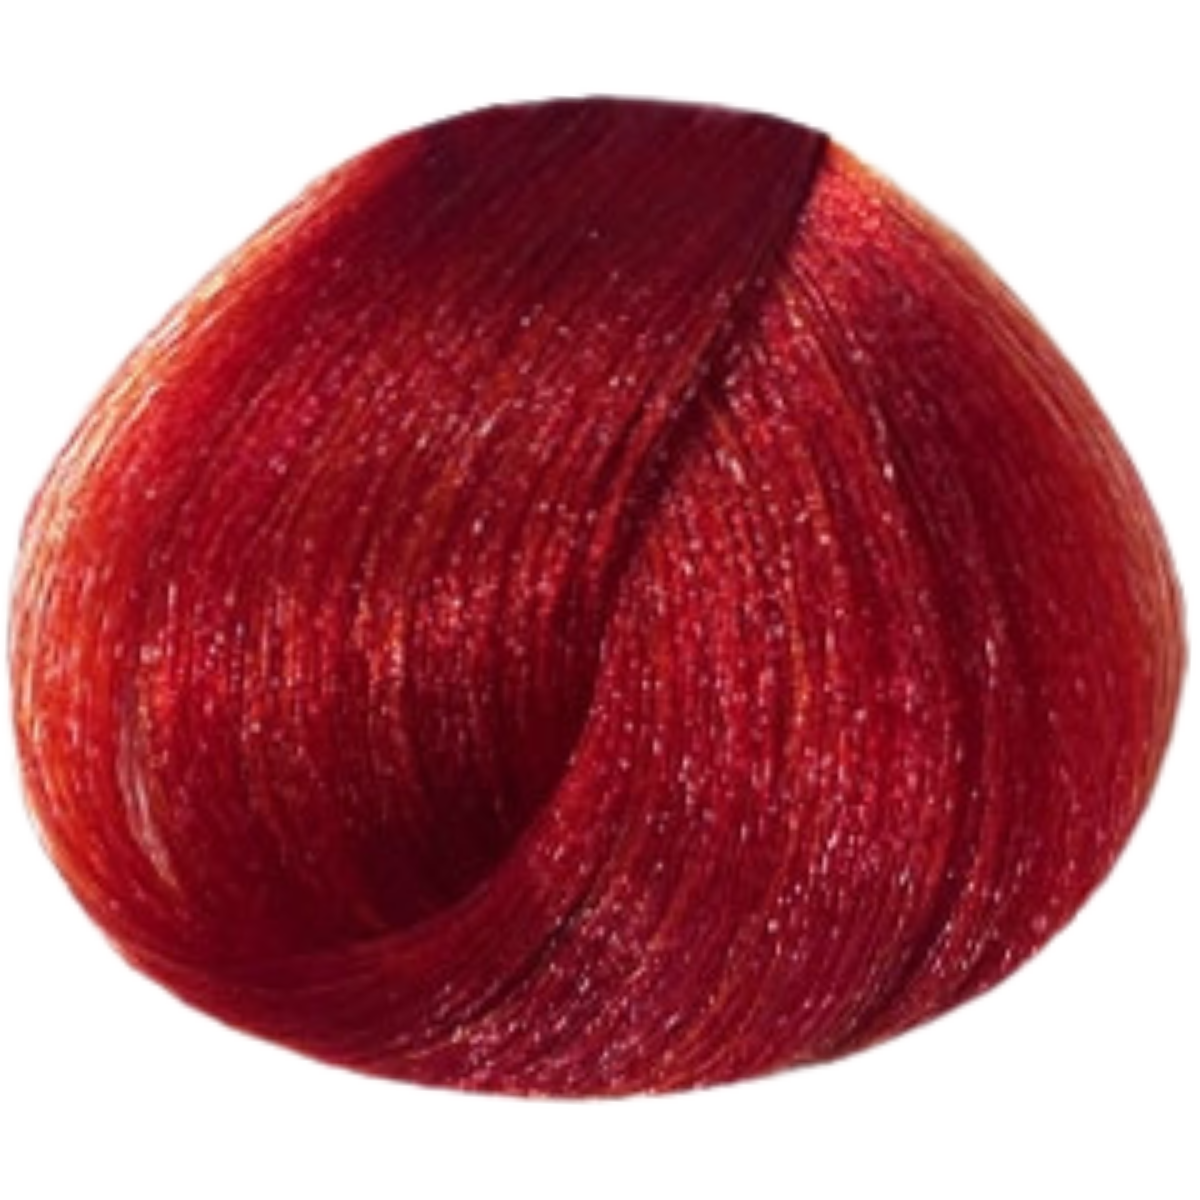 צבע שיער 6.666 LIGHT INTENSE RED BLONDE פארמויטה FarmaVita צבע לשיער 100גרם